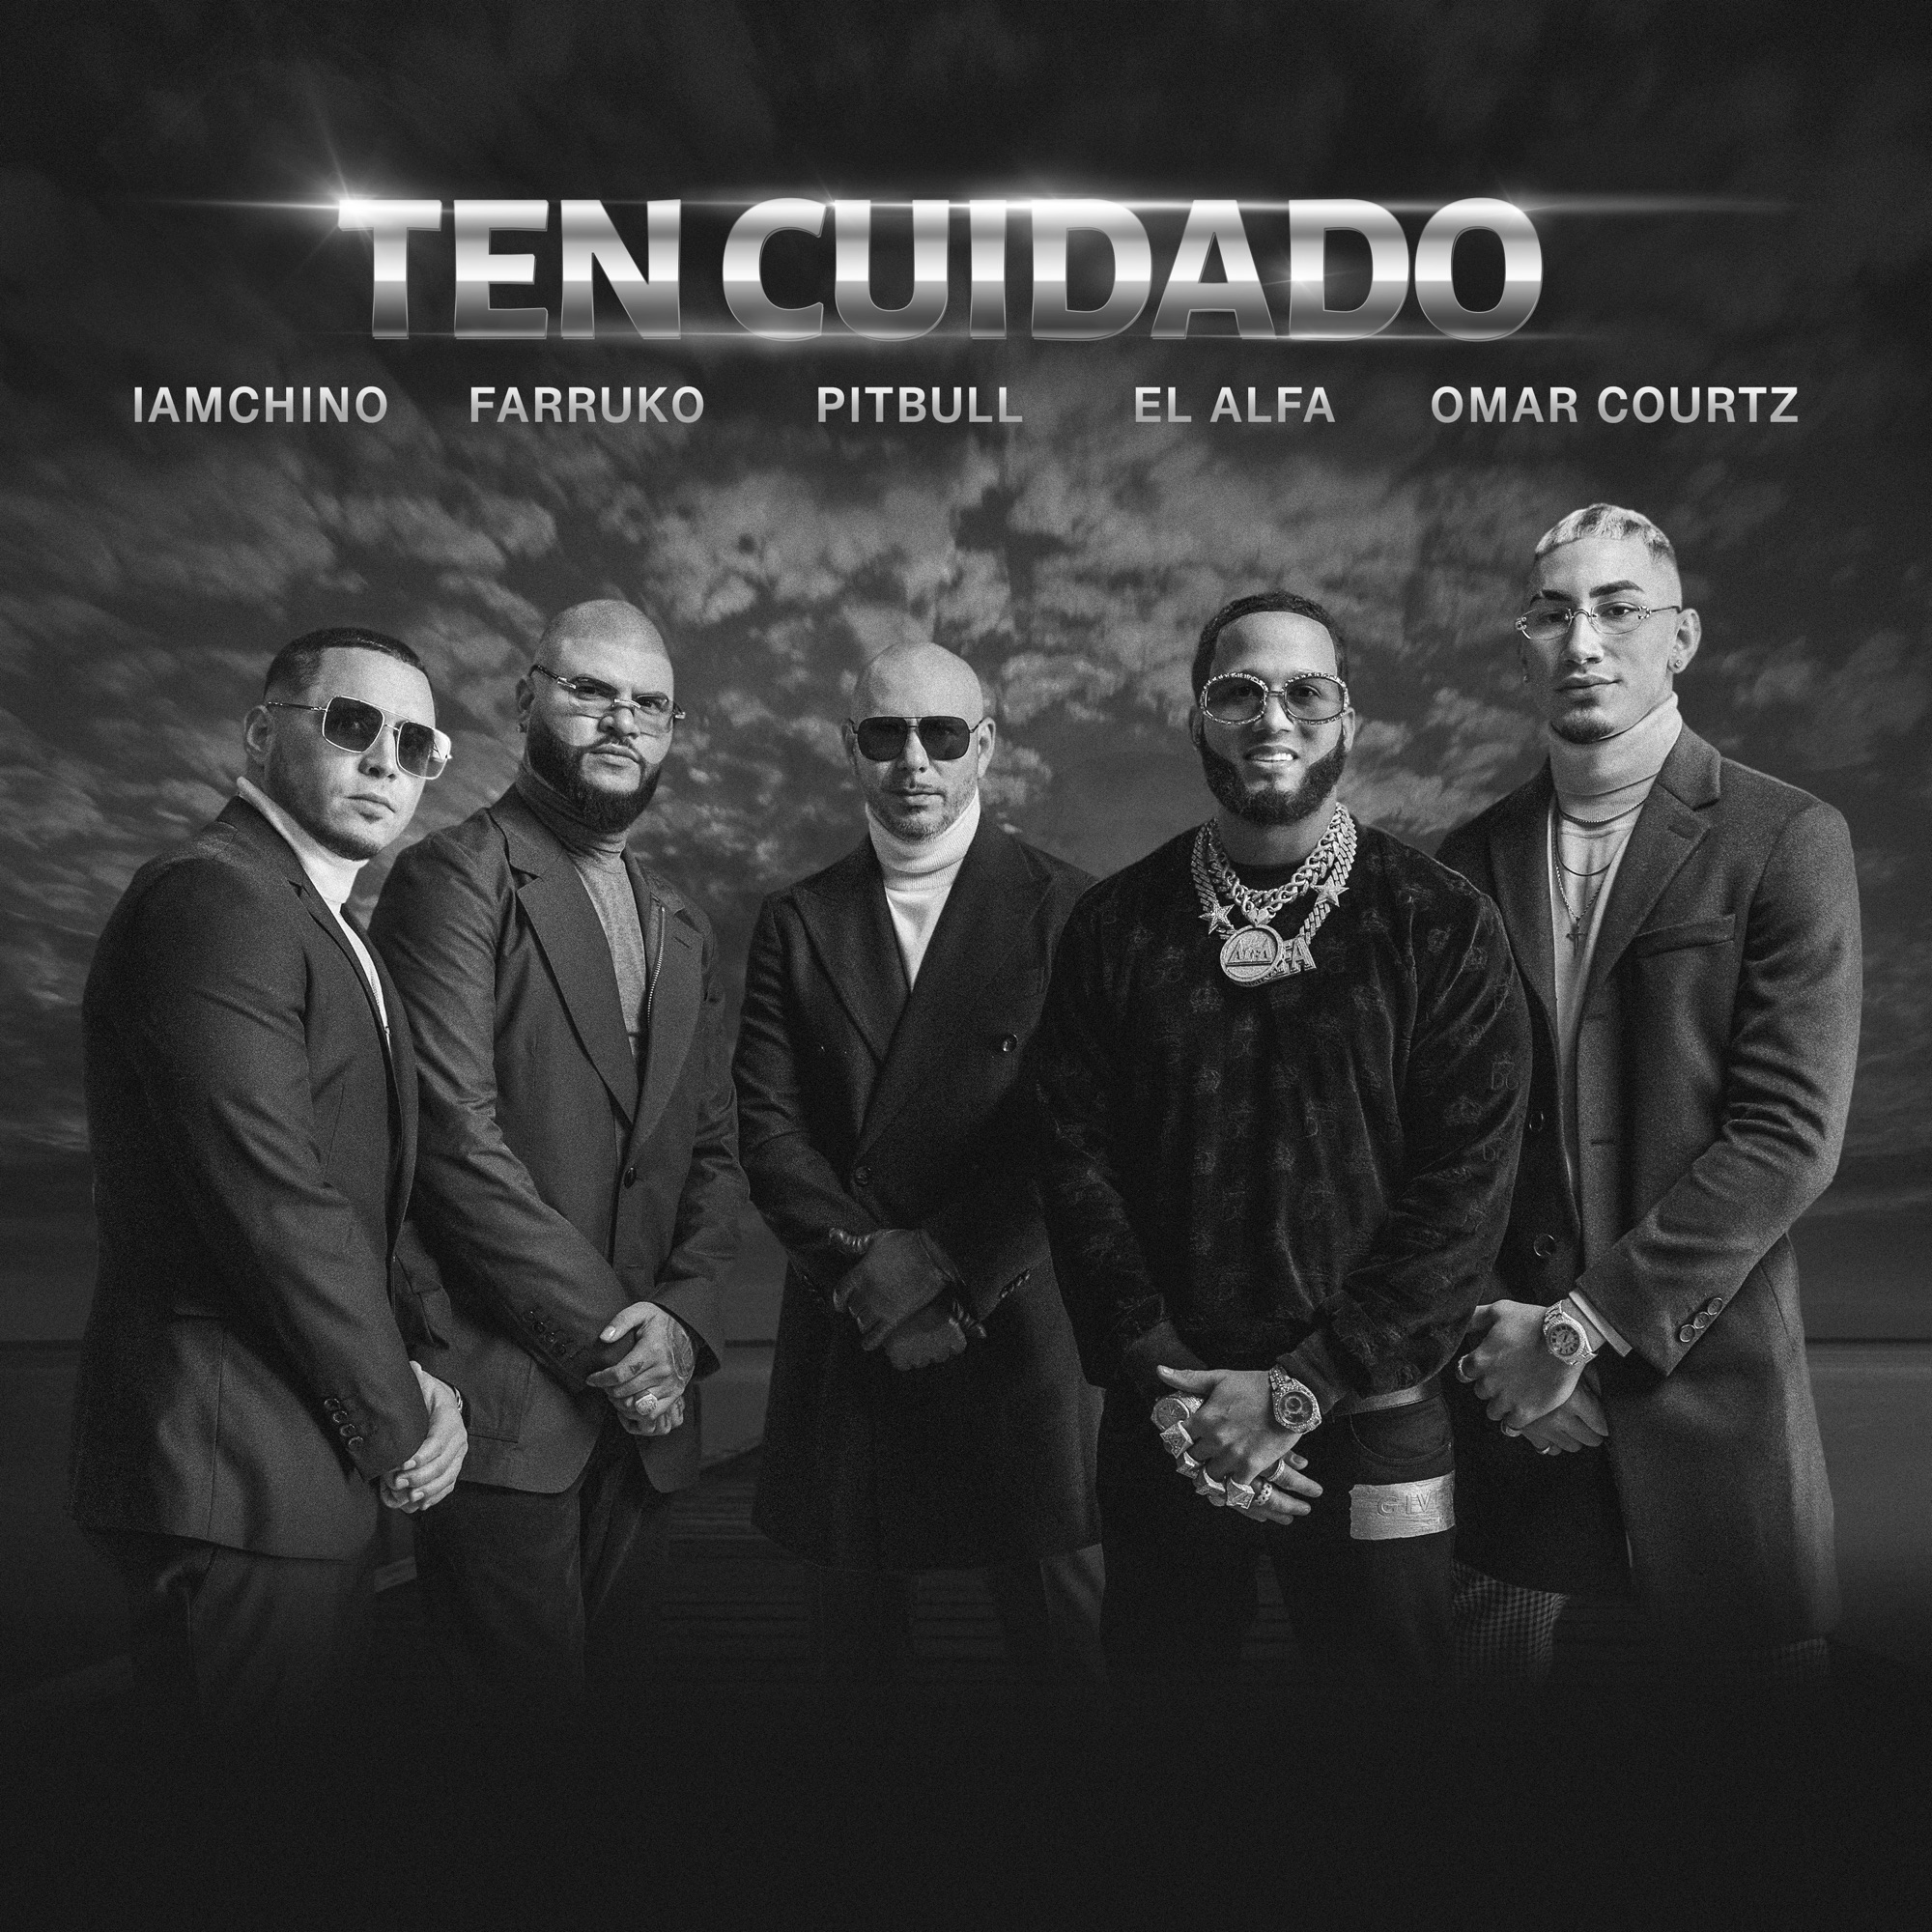 Pitbull, Farruko & IAmChino - Ten Cuidado (feat. El Alfa & Omar Courtz) - Single